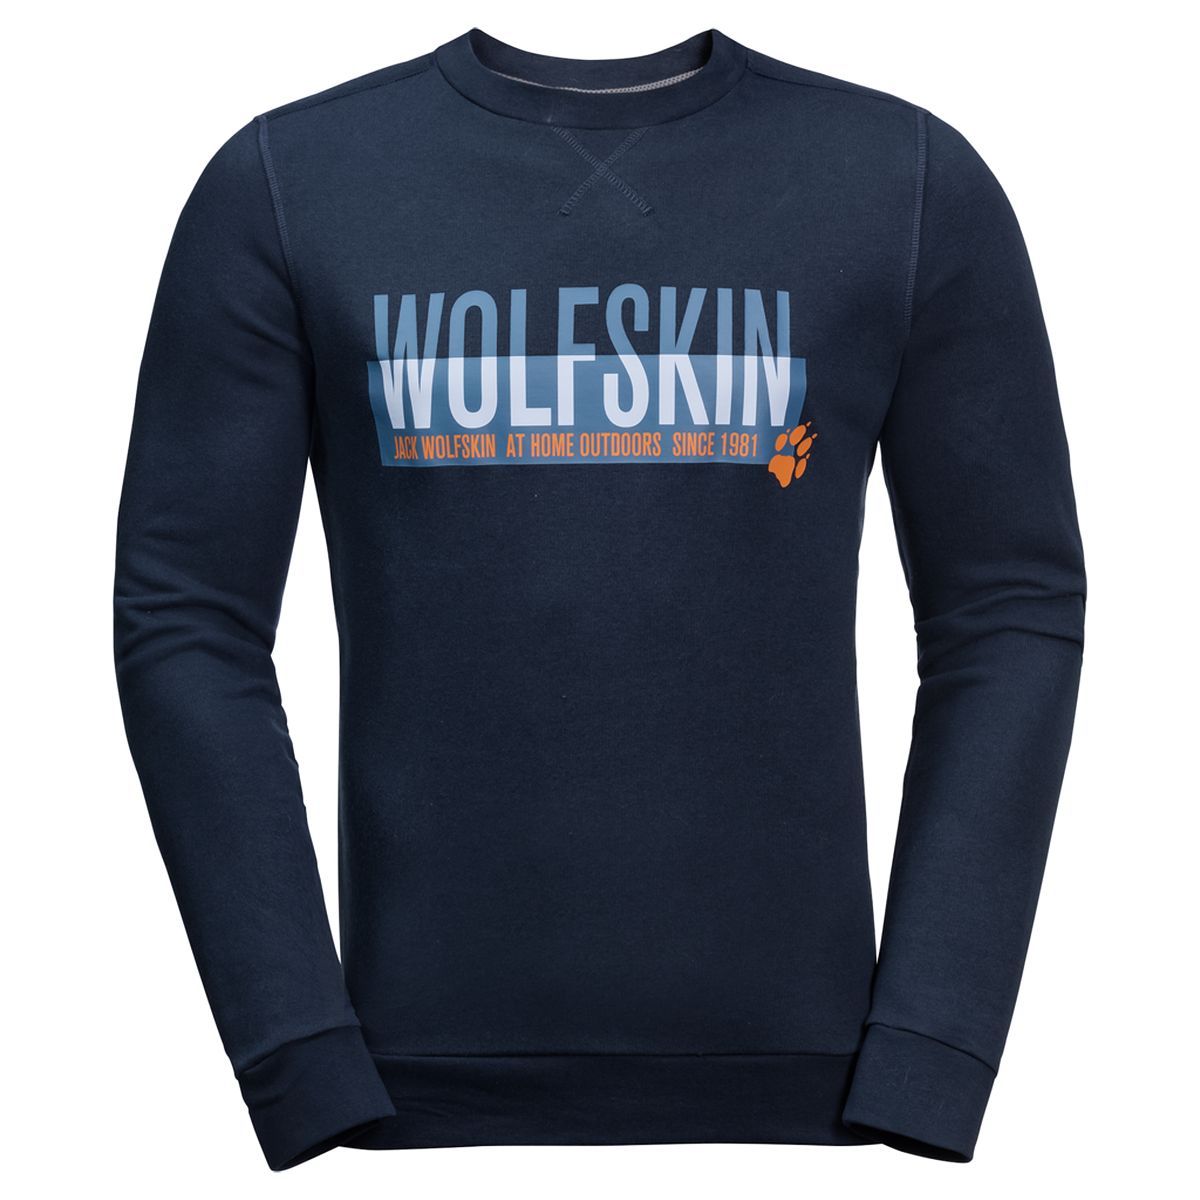   Jack Wolfskin Slogan Sweatshirt M, : -. 1707391-1010.  M (46)